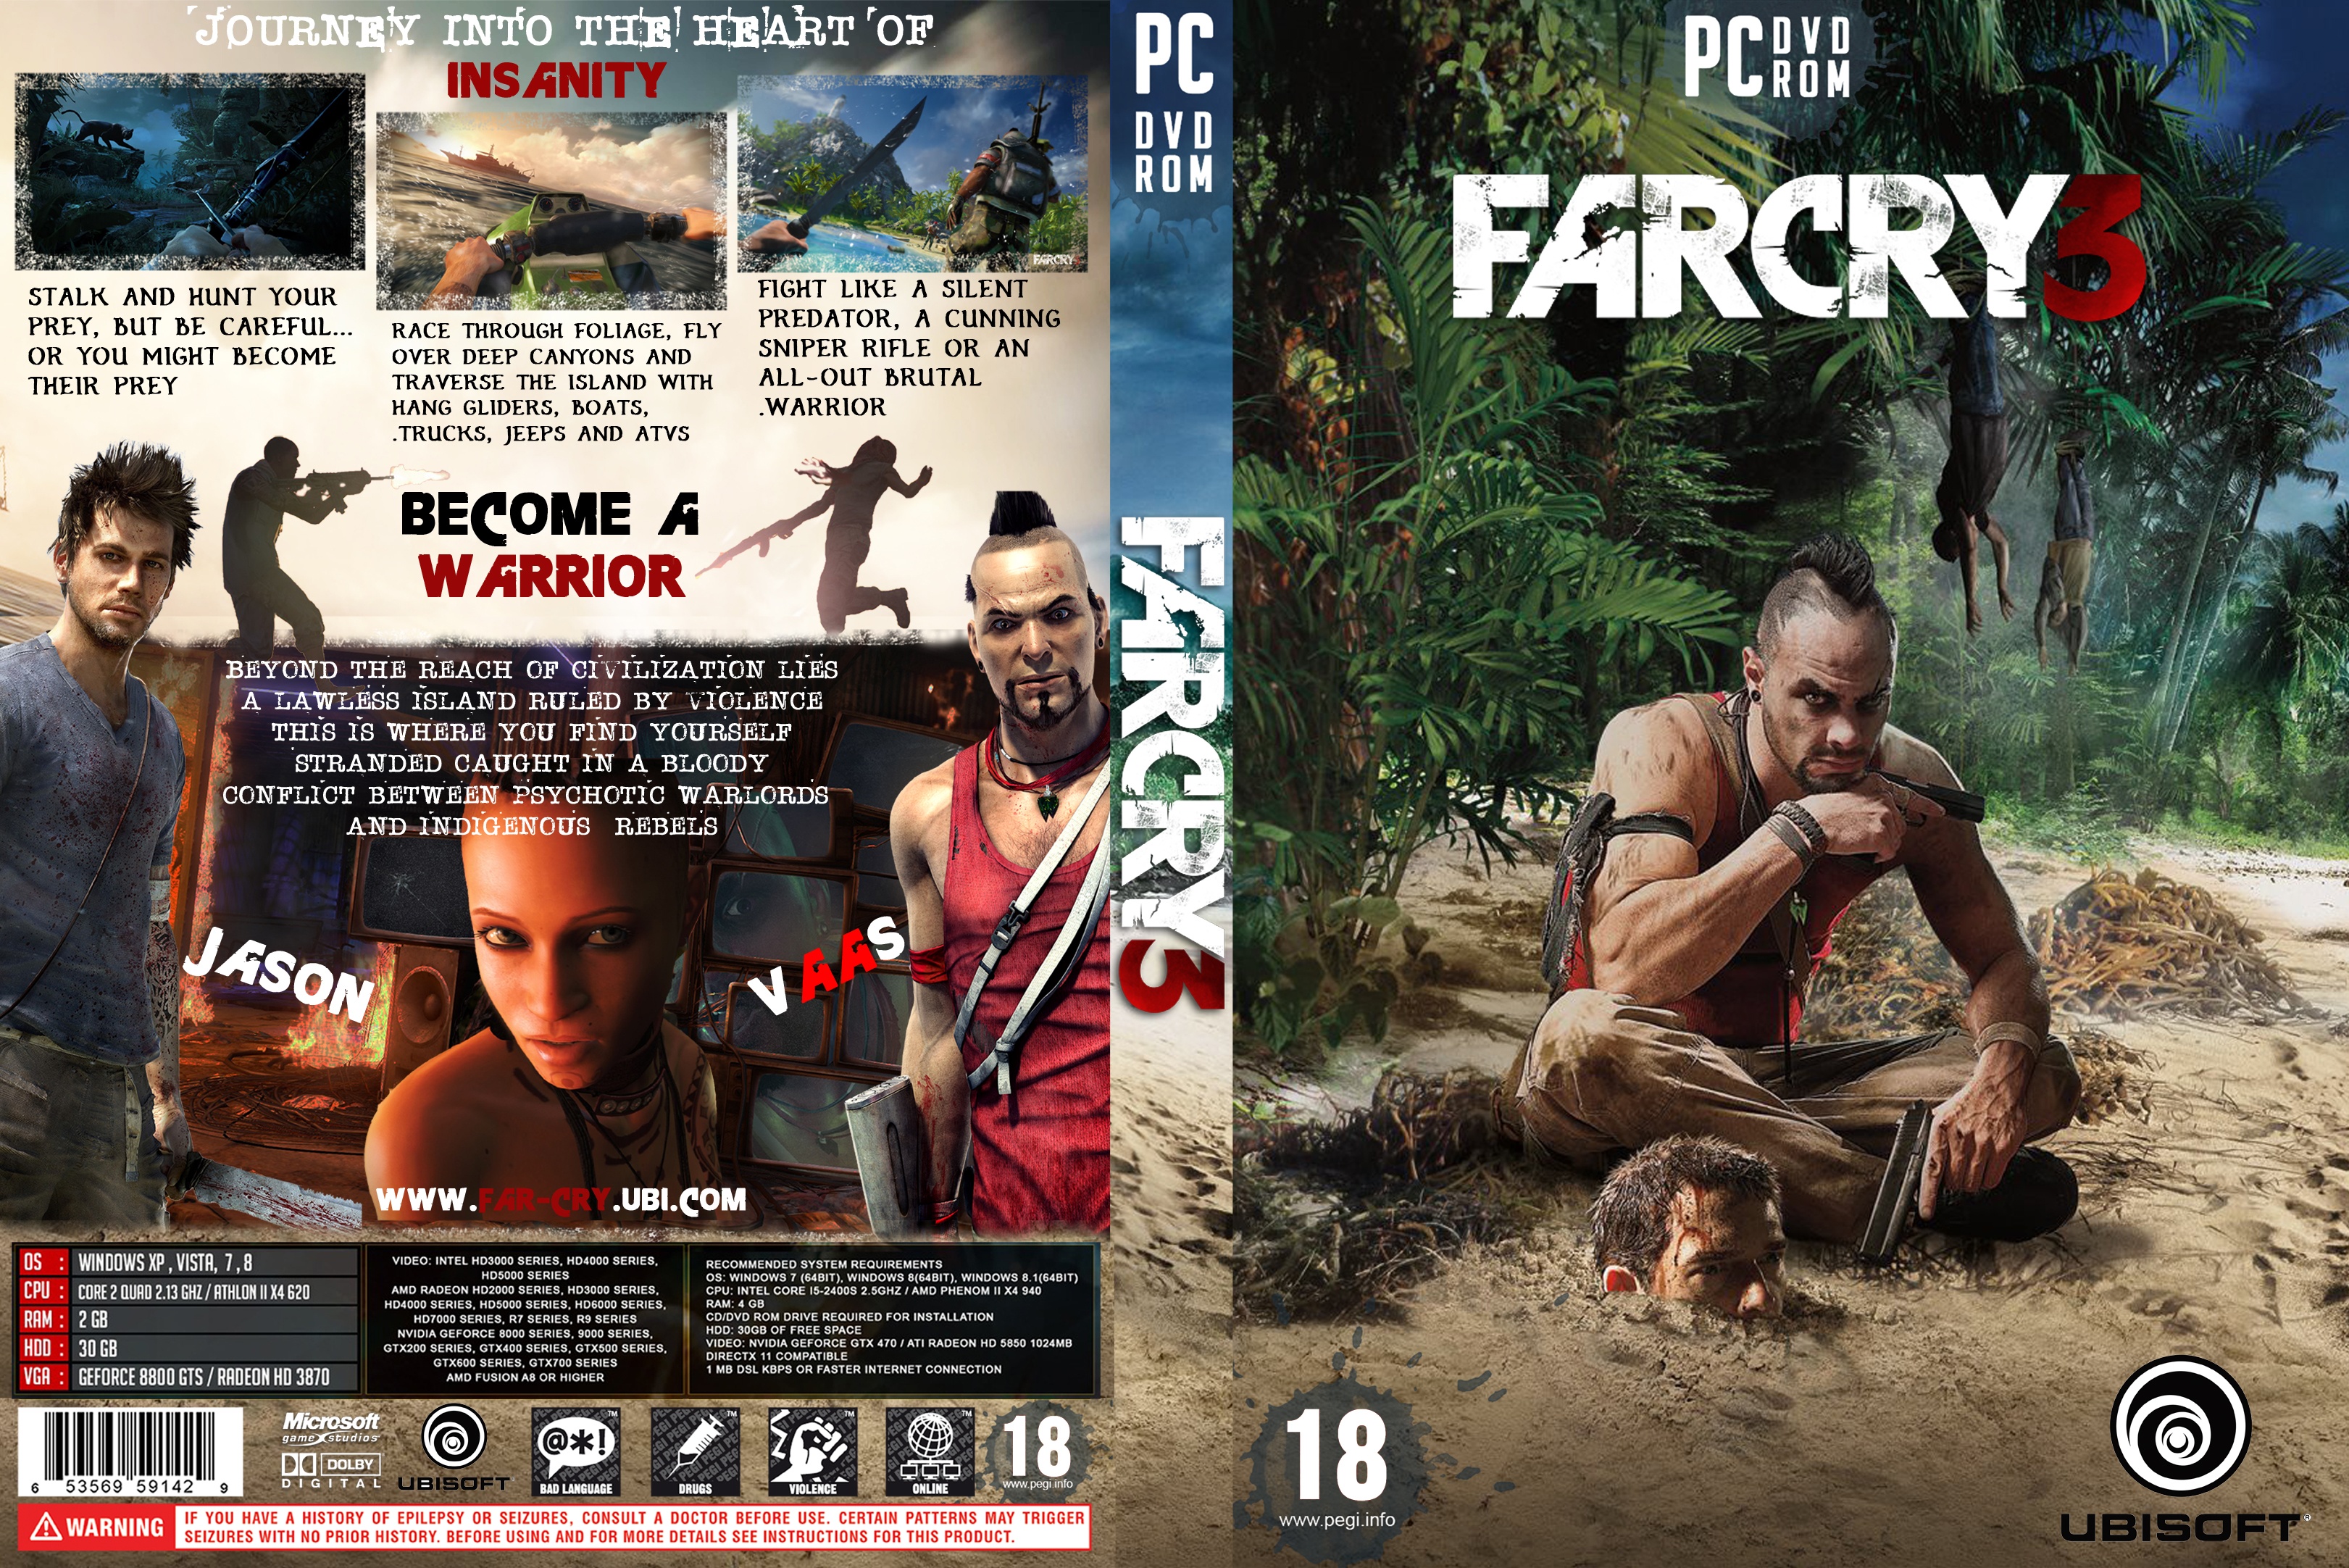 FarCry3 box cover